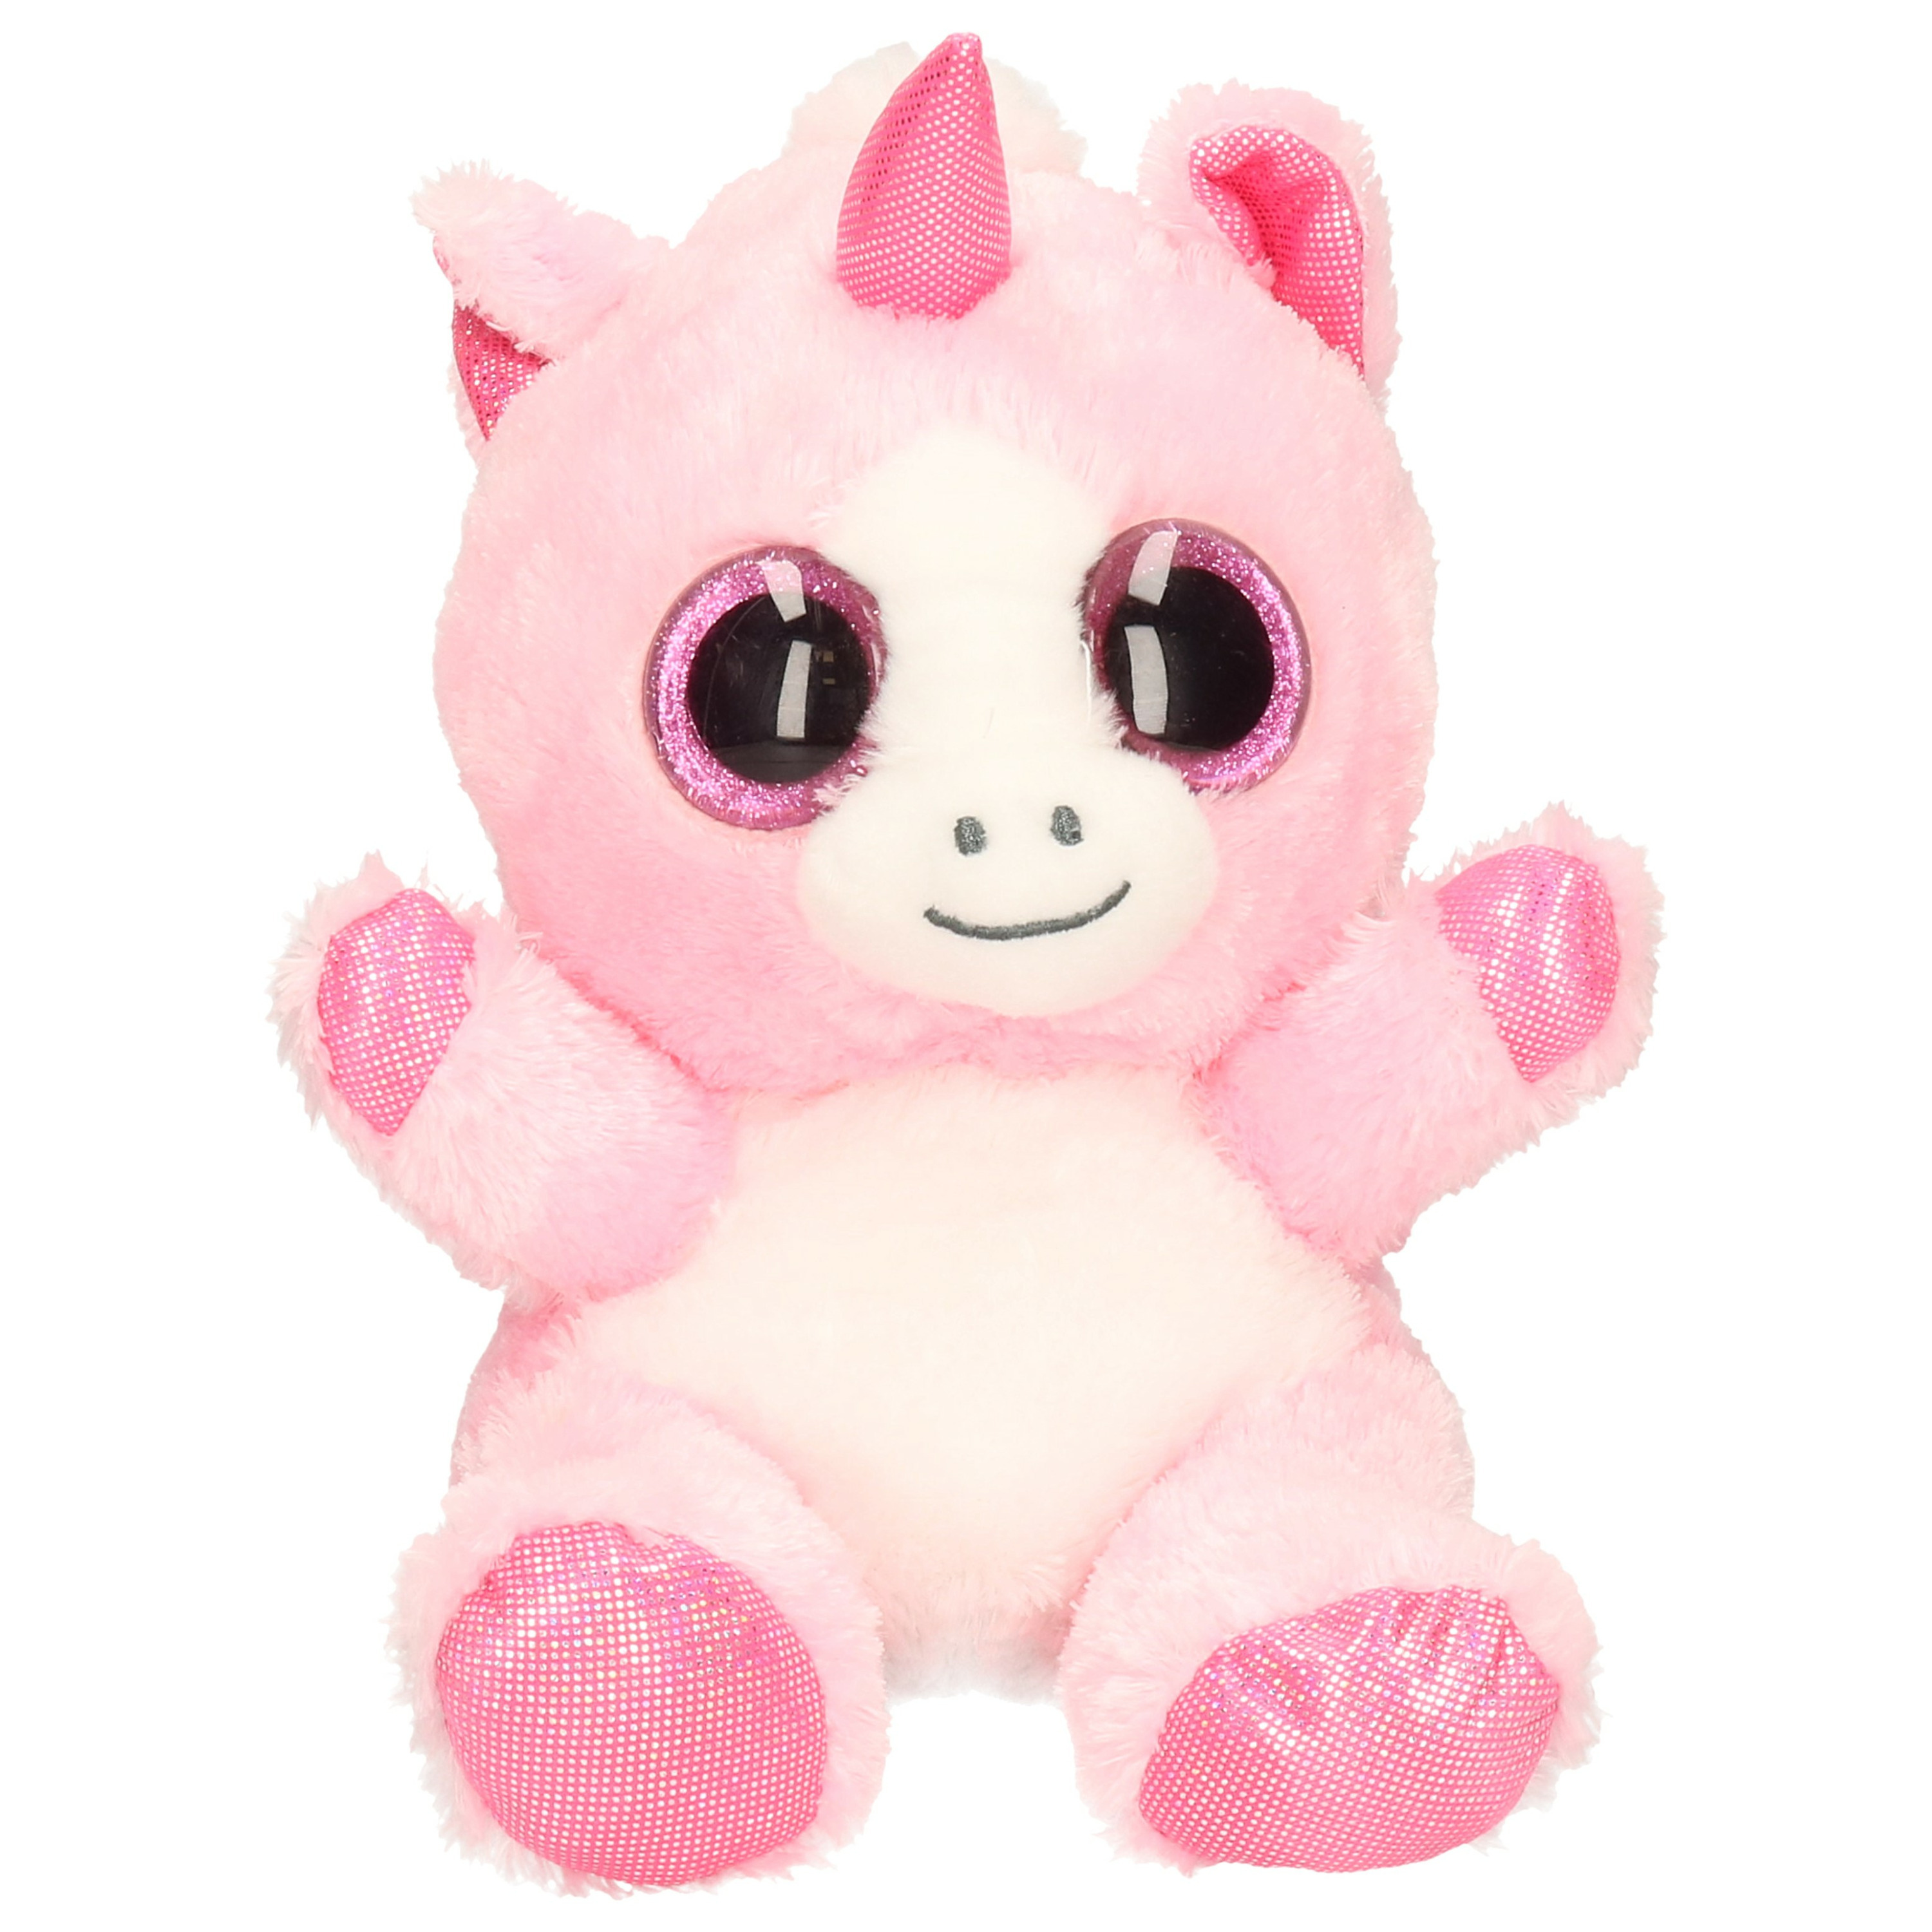 Keel Toys pluche eenhoorn knuffel roze-wit 25 cm